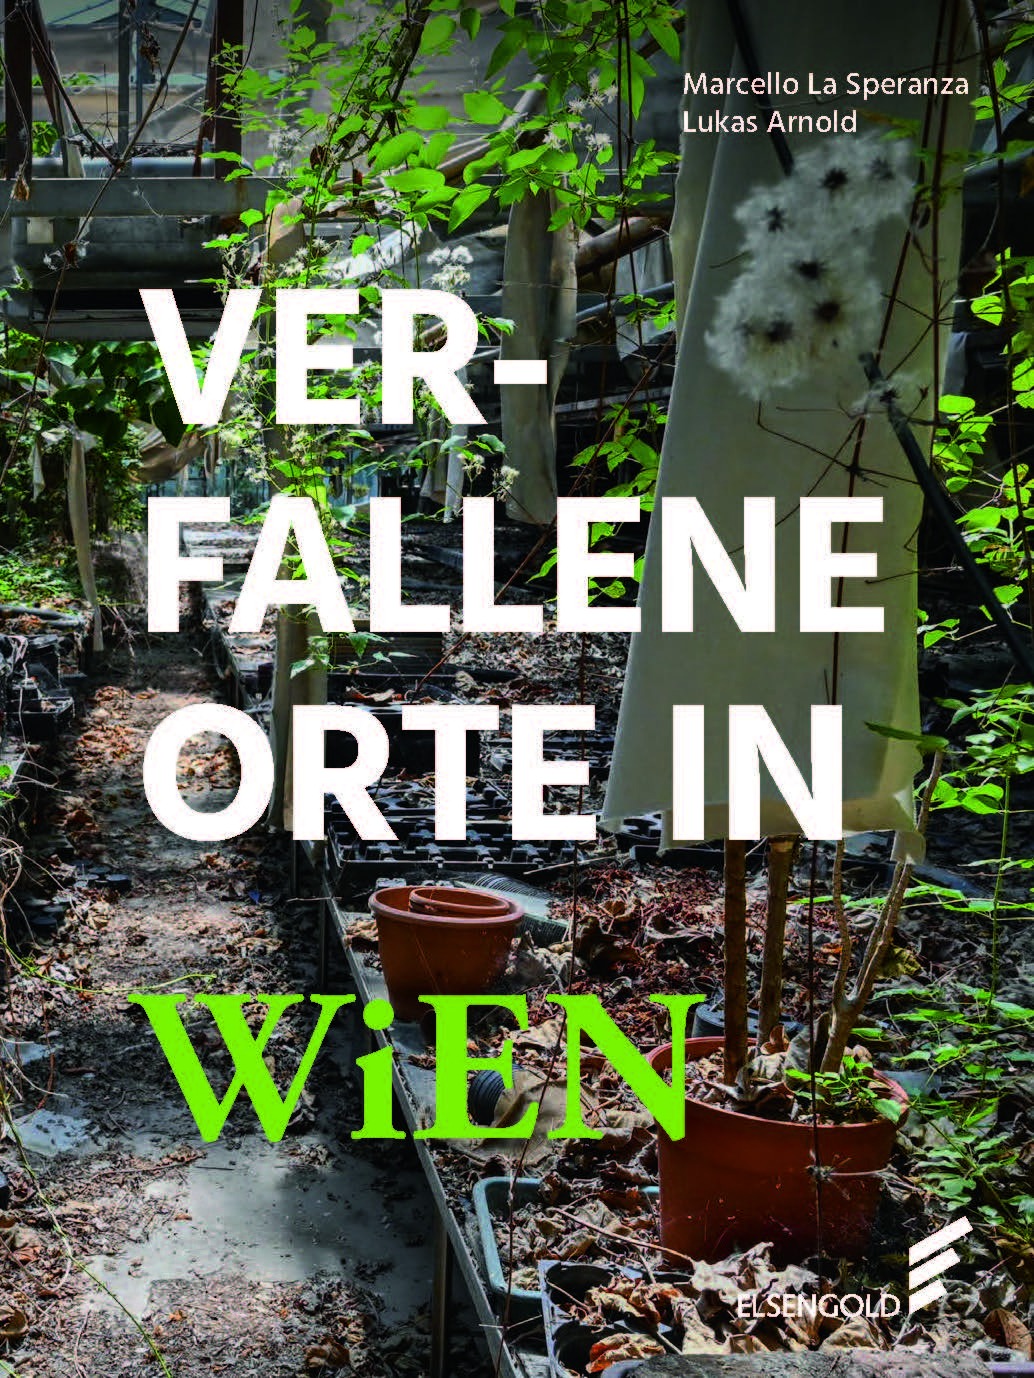 Bild zeigt das Cover des Buches "Verfallene Orte in Wien" über Lost Places.